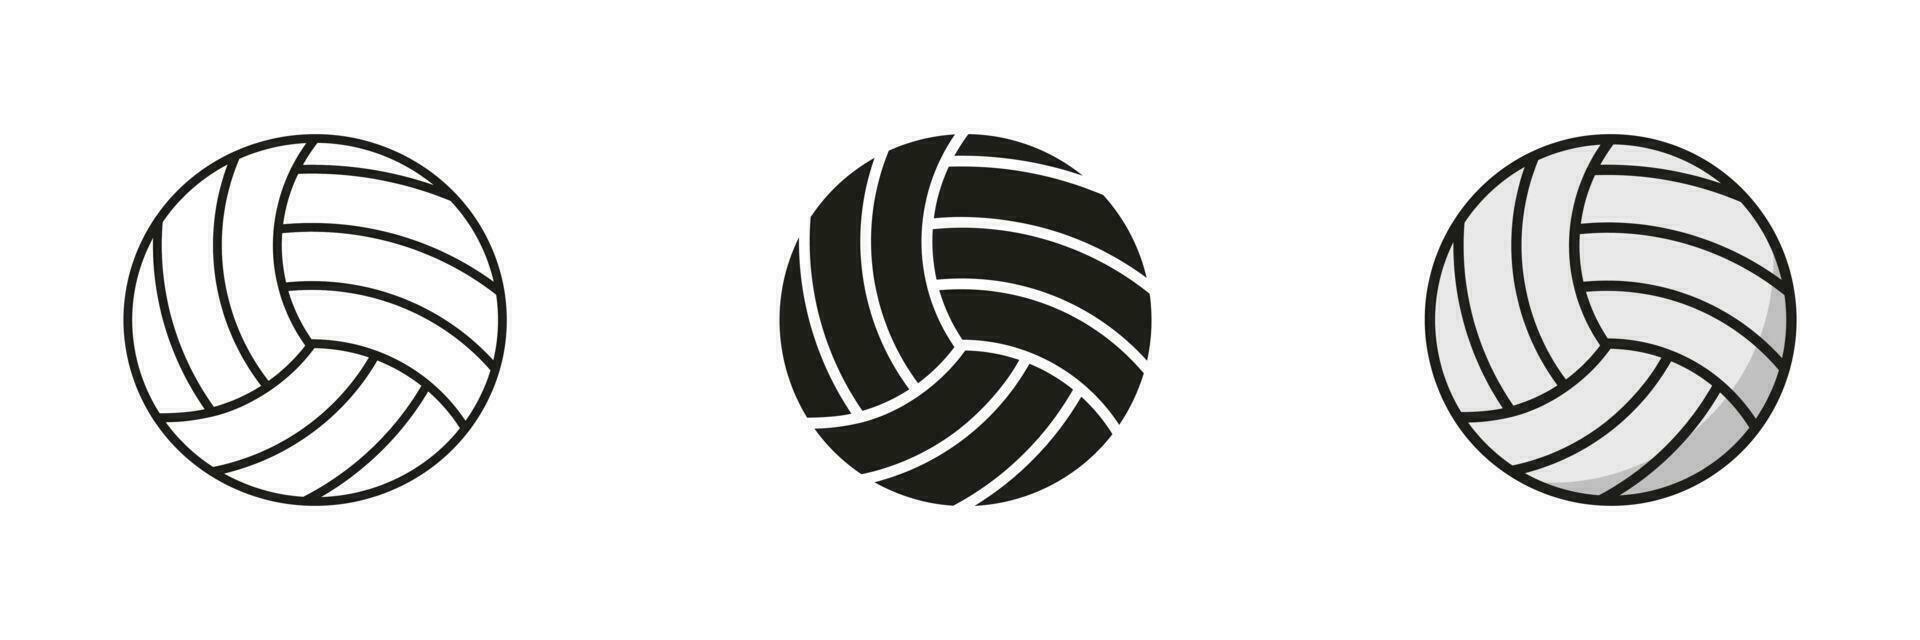 volleyboll boll svart silhuett och linje ikon uppsättning. boll för spela sporter spel fast och översikt svart och Färg symbol samling på vit bakgrund. isolerat vektor illustration.